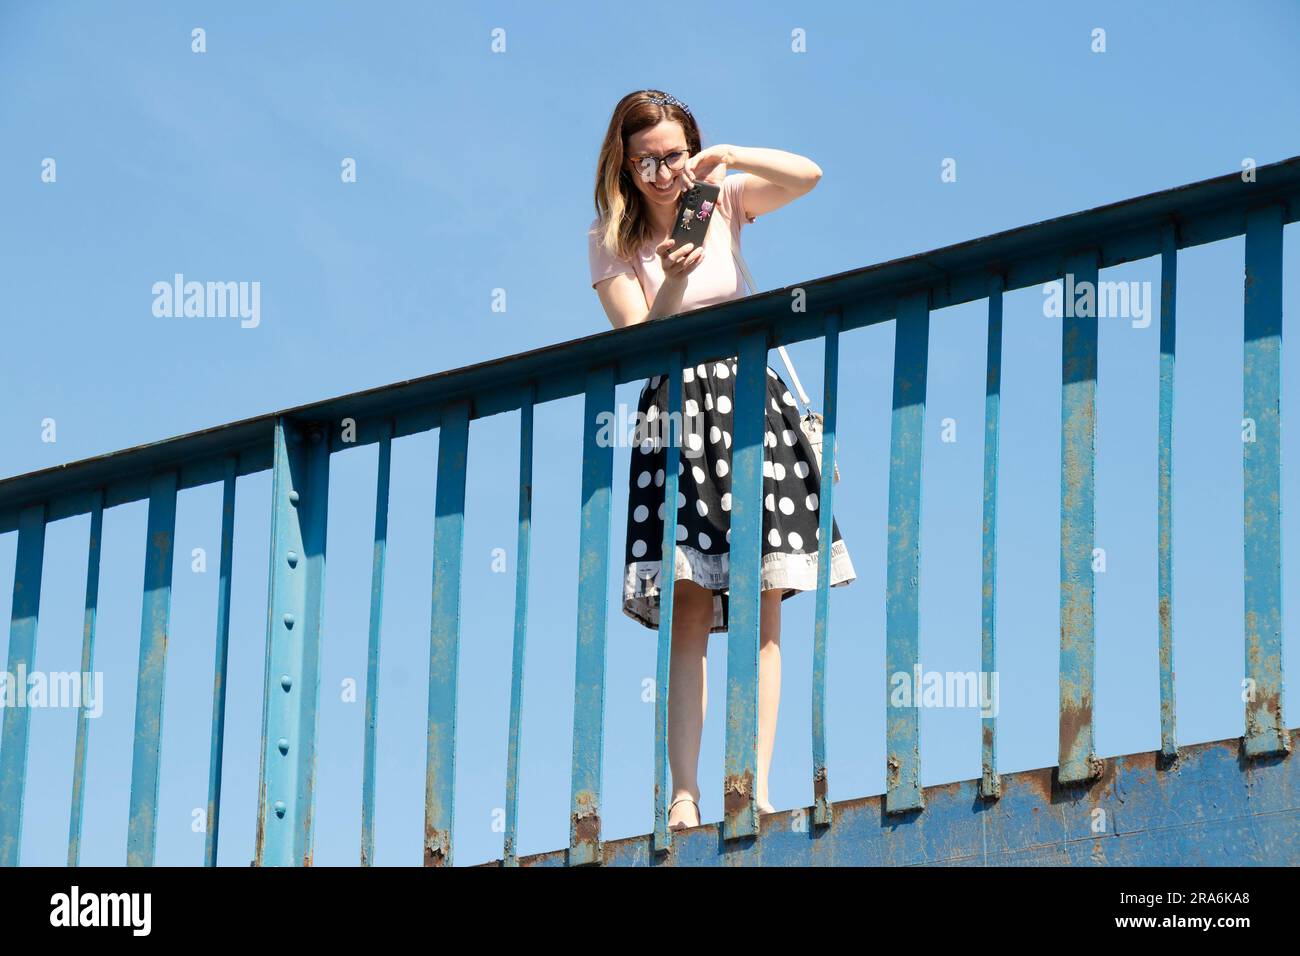 Belgrado, Serbia - 16 giugno 2022: Una donna che scatta fotografie con il cellulare mentre si trova su un ponte, in un giorno d'estate, con un angolo di visione basso Foto Stock